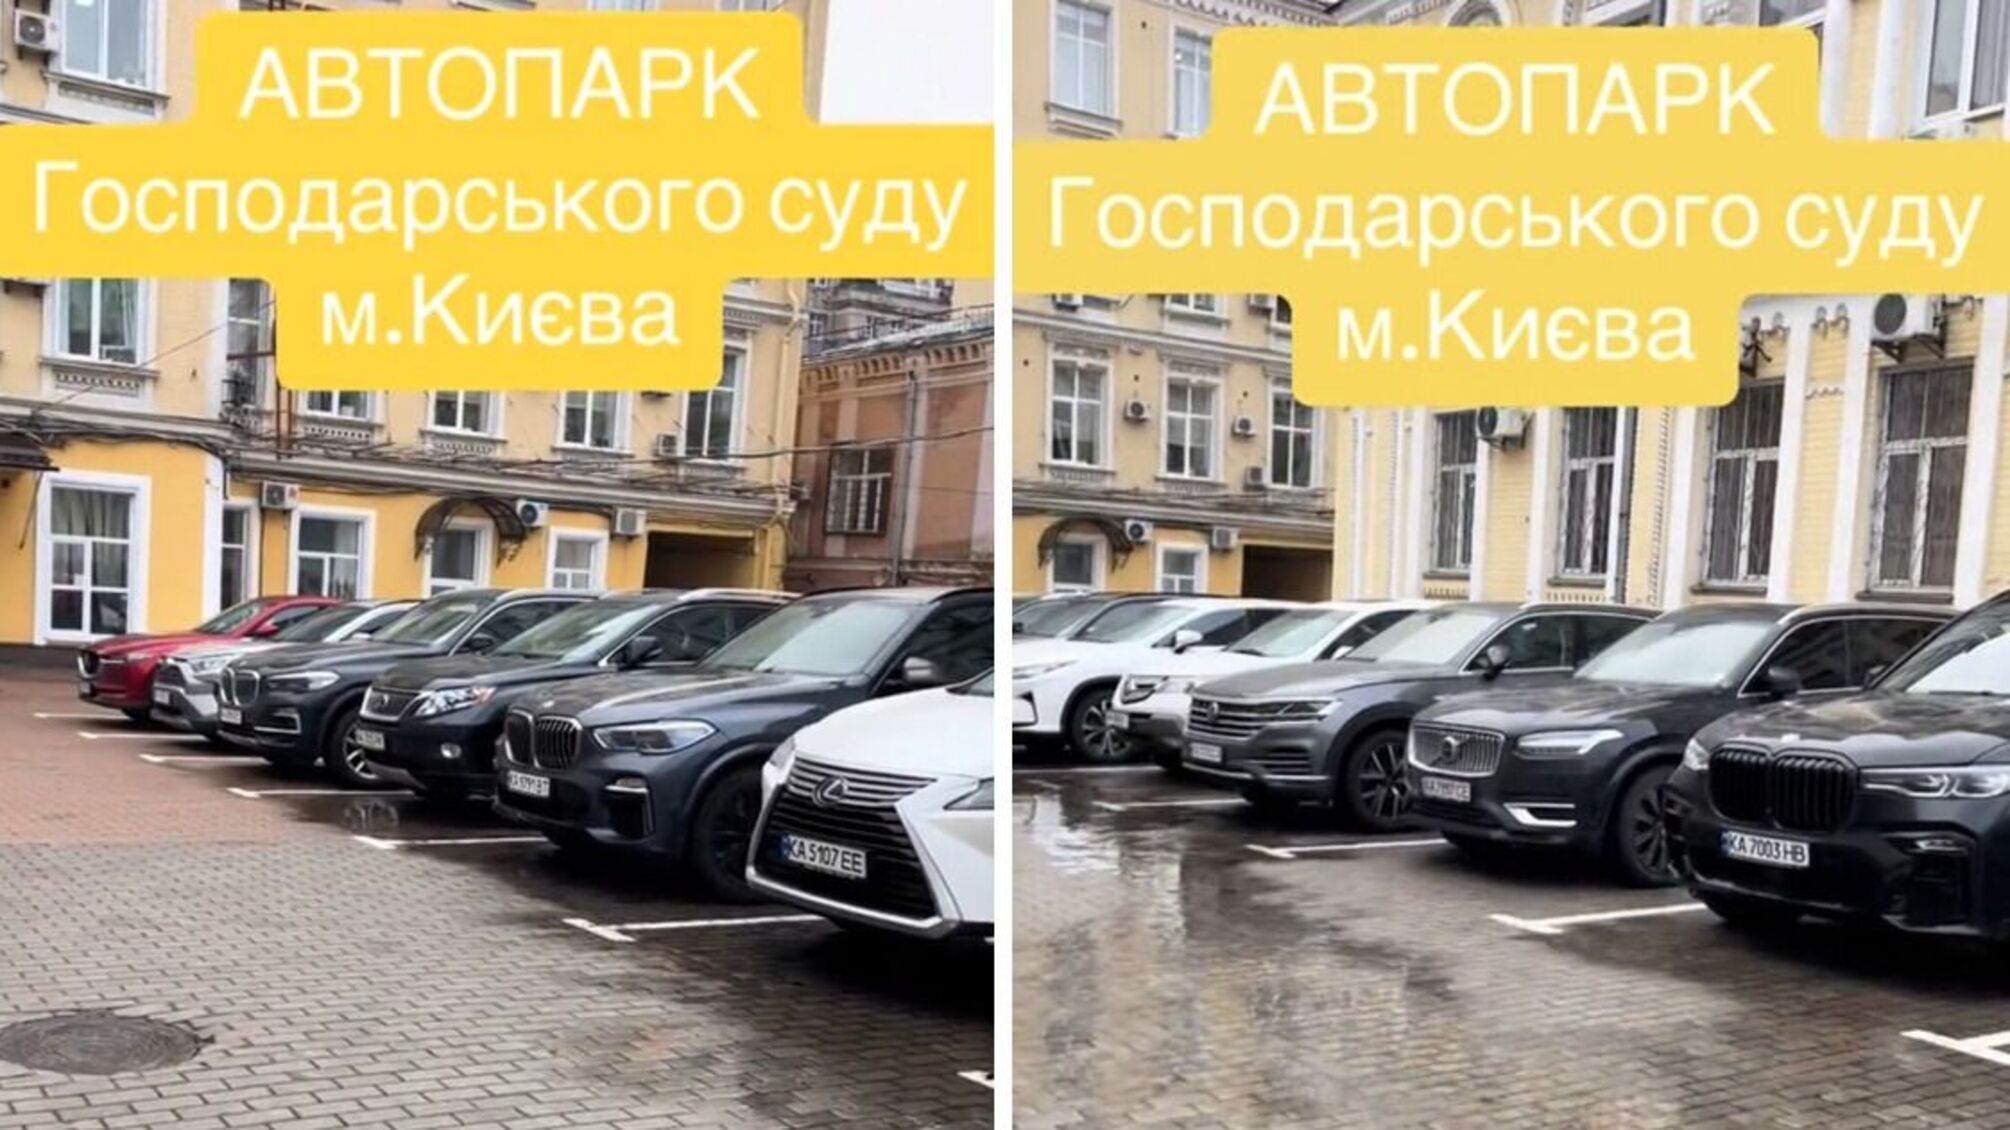 Біля Господарського суду Києва помітили елітний автопарк з нещодавно придбаними автівками (відео)